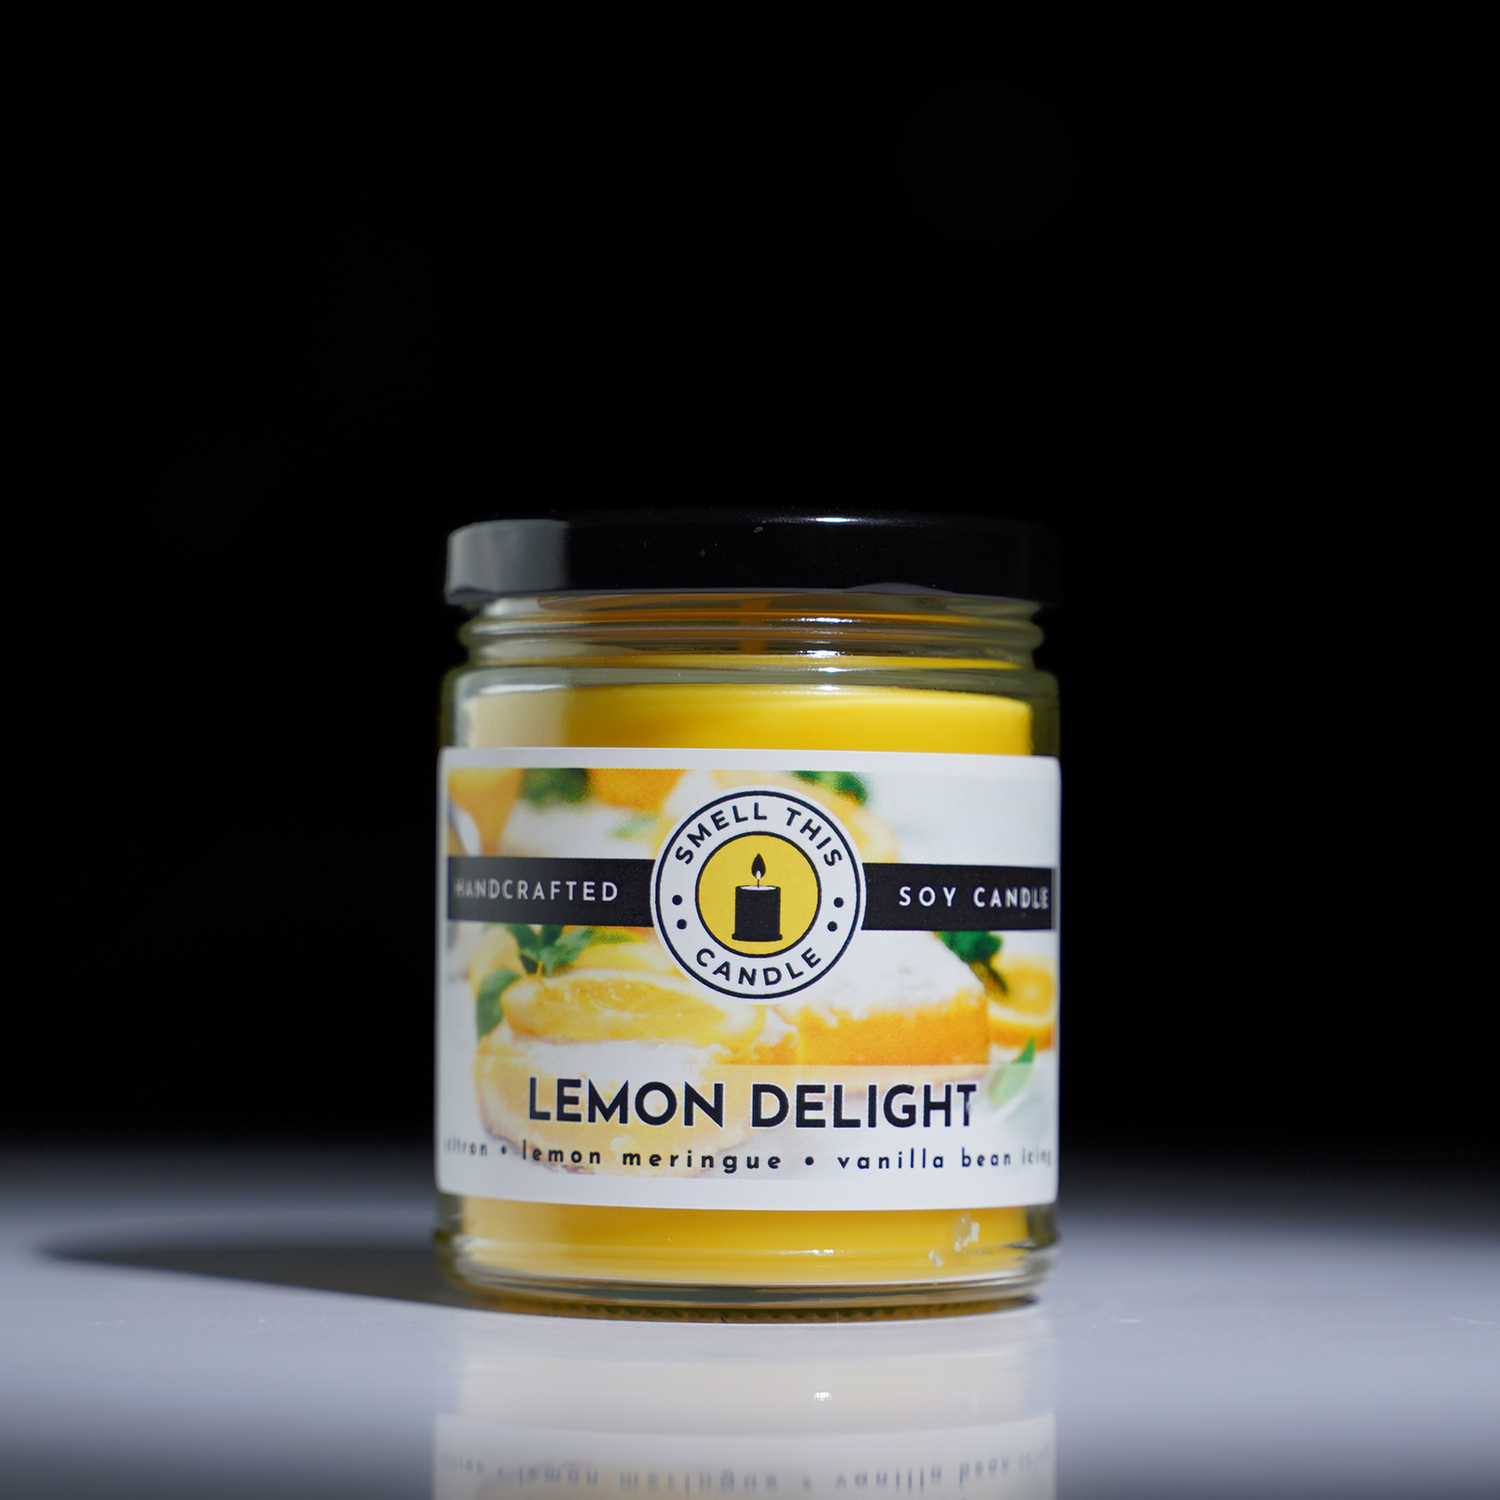 Lemon Delight candle